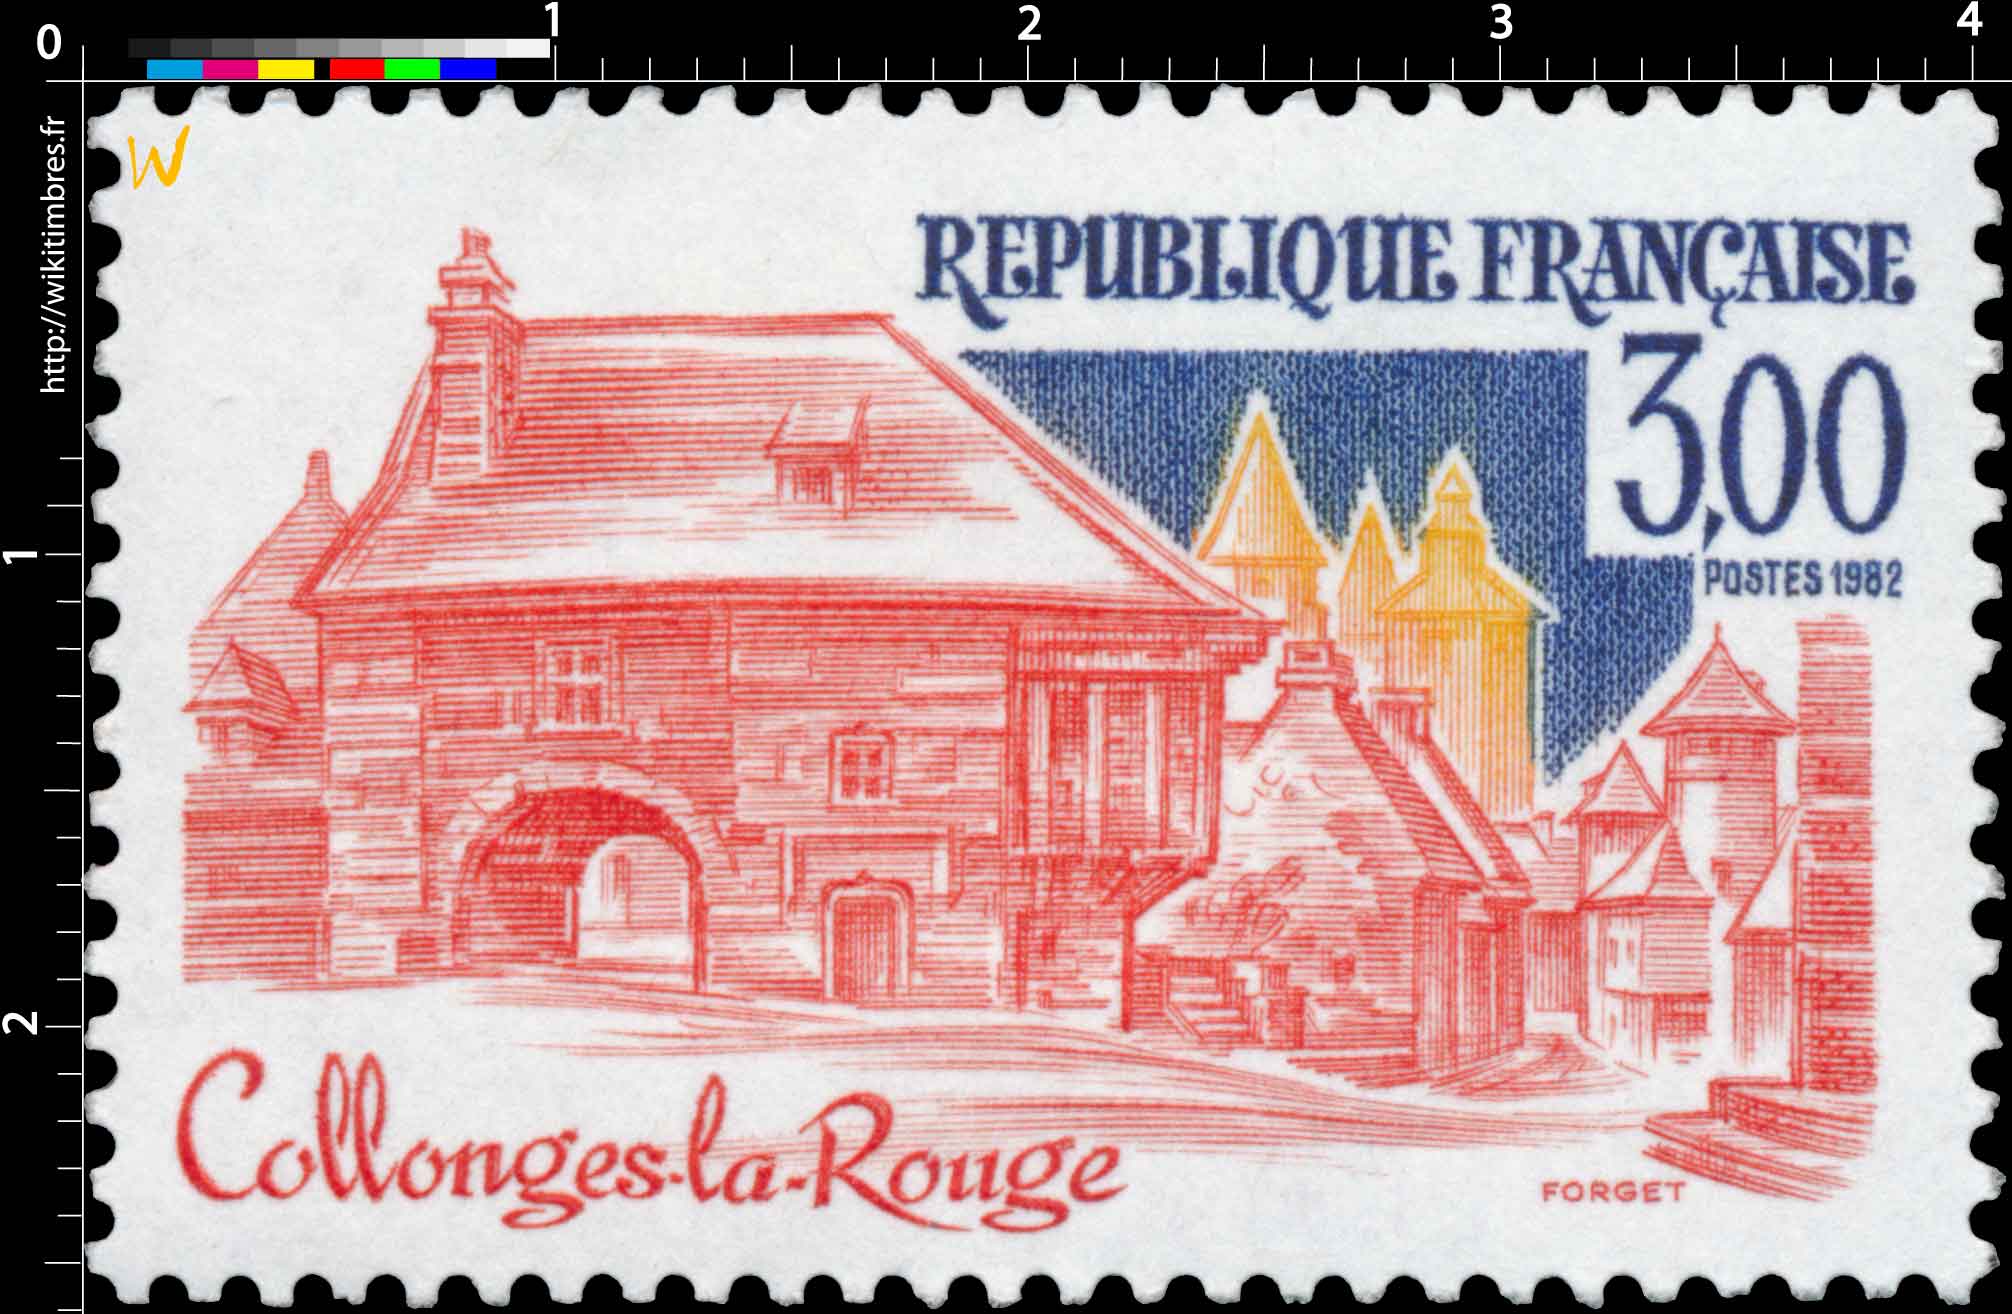 1982 Collonges-la-Rouge